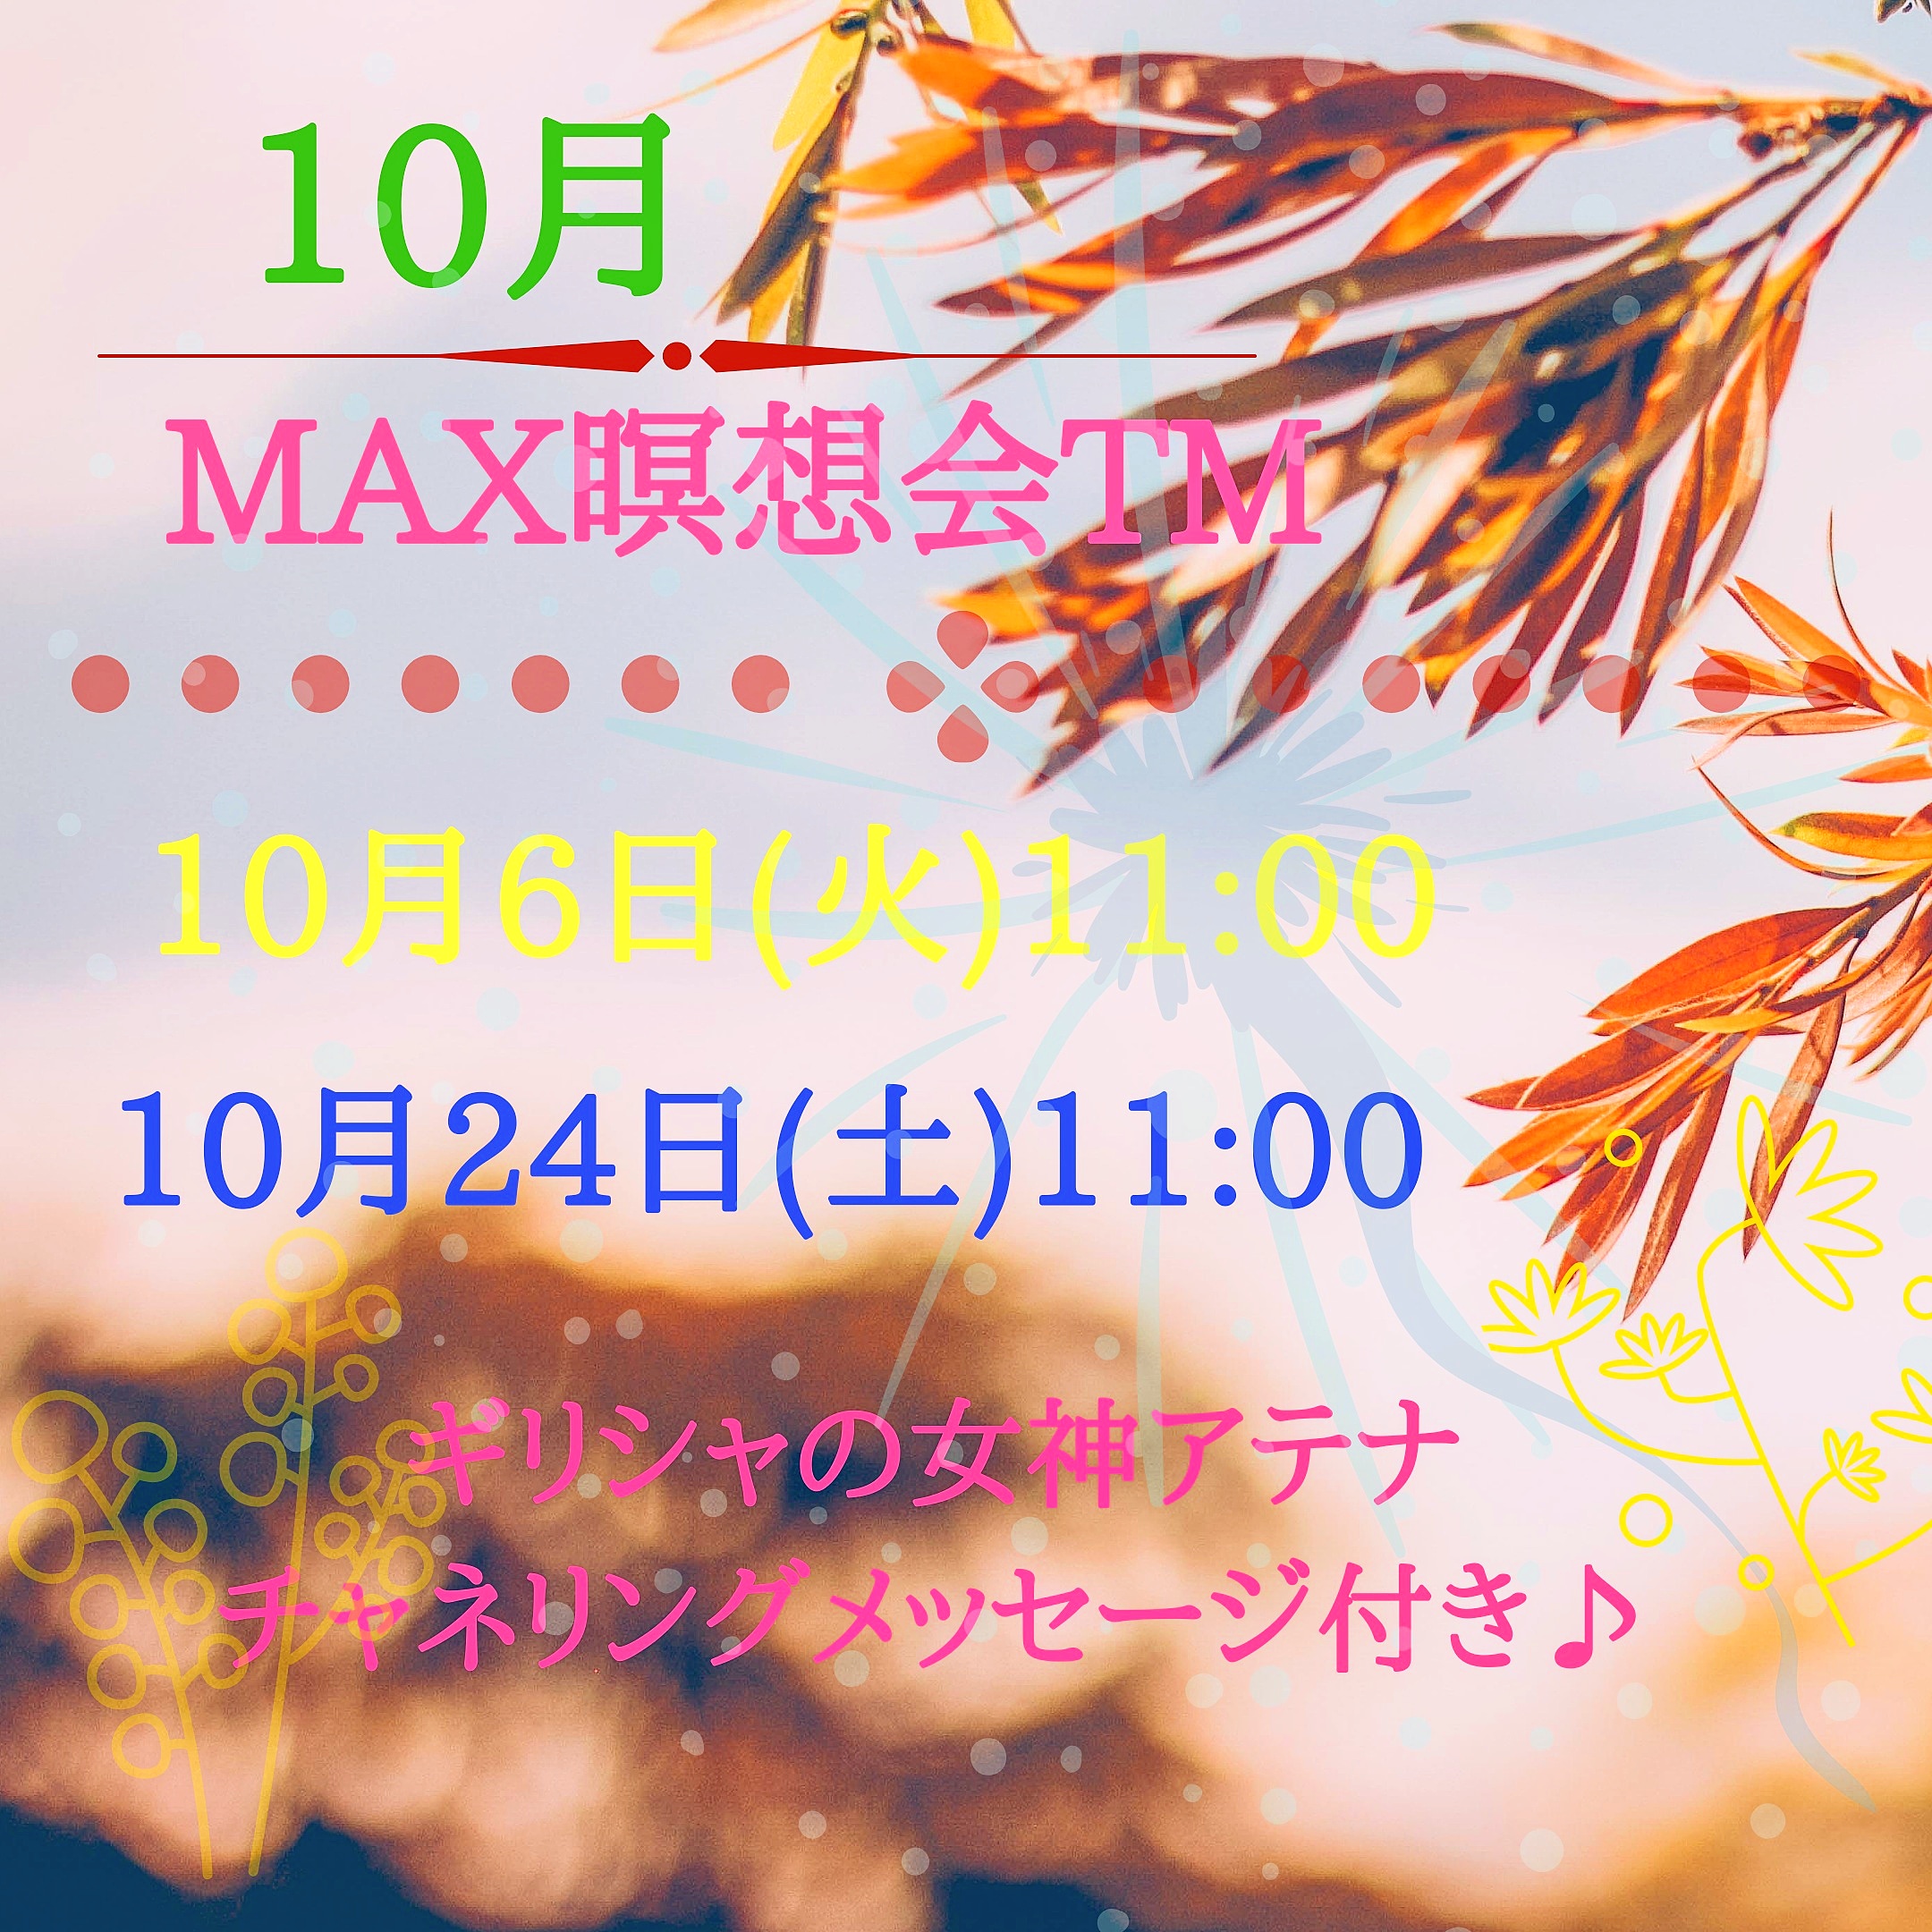 10月☆MAX瞑想会TM☆スケジュール